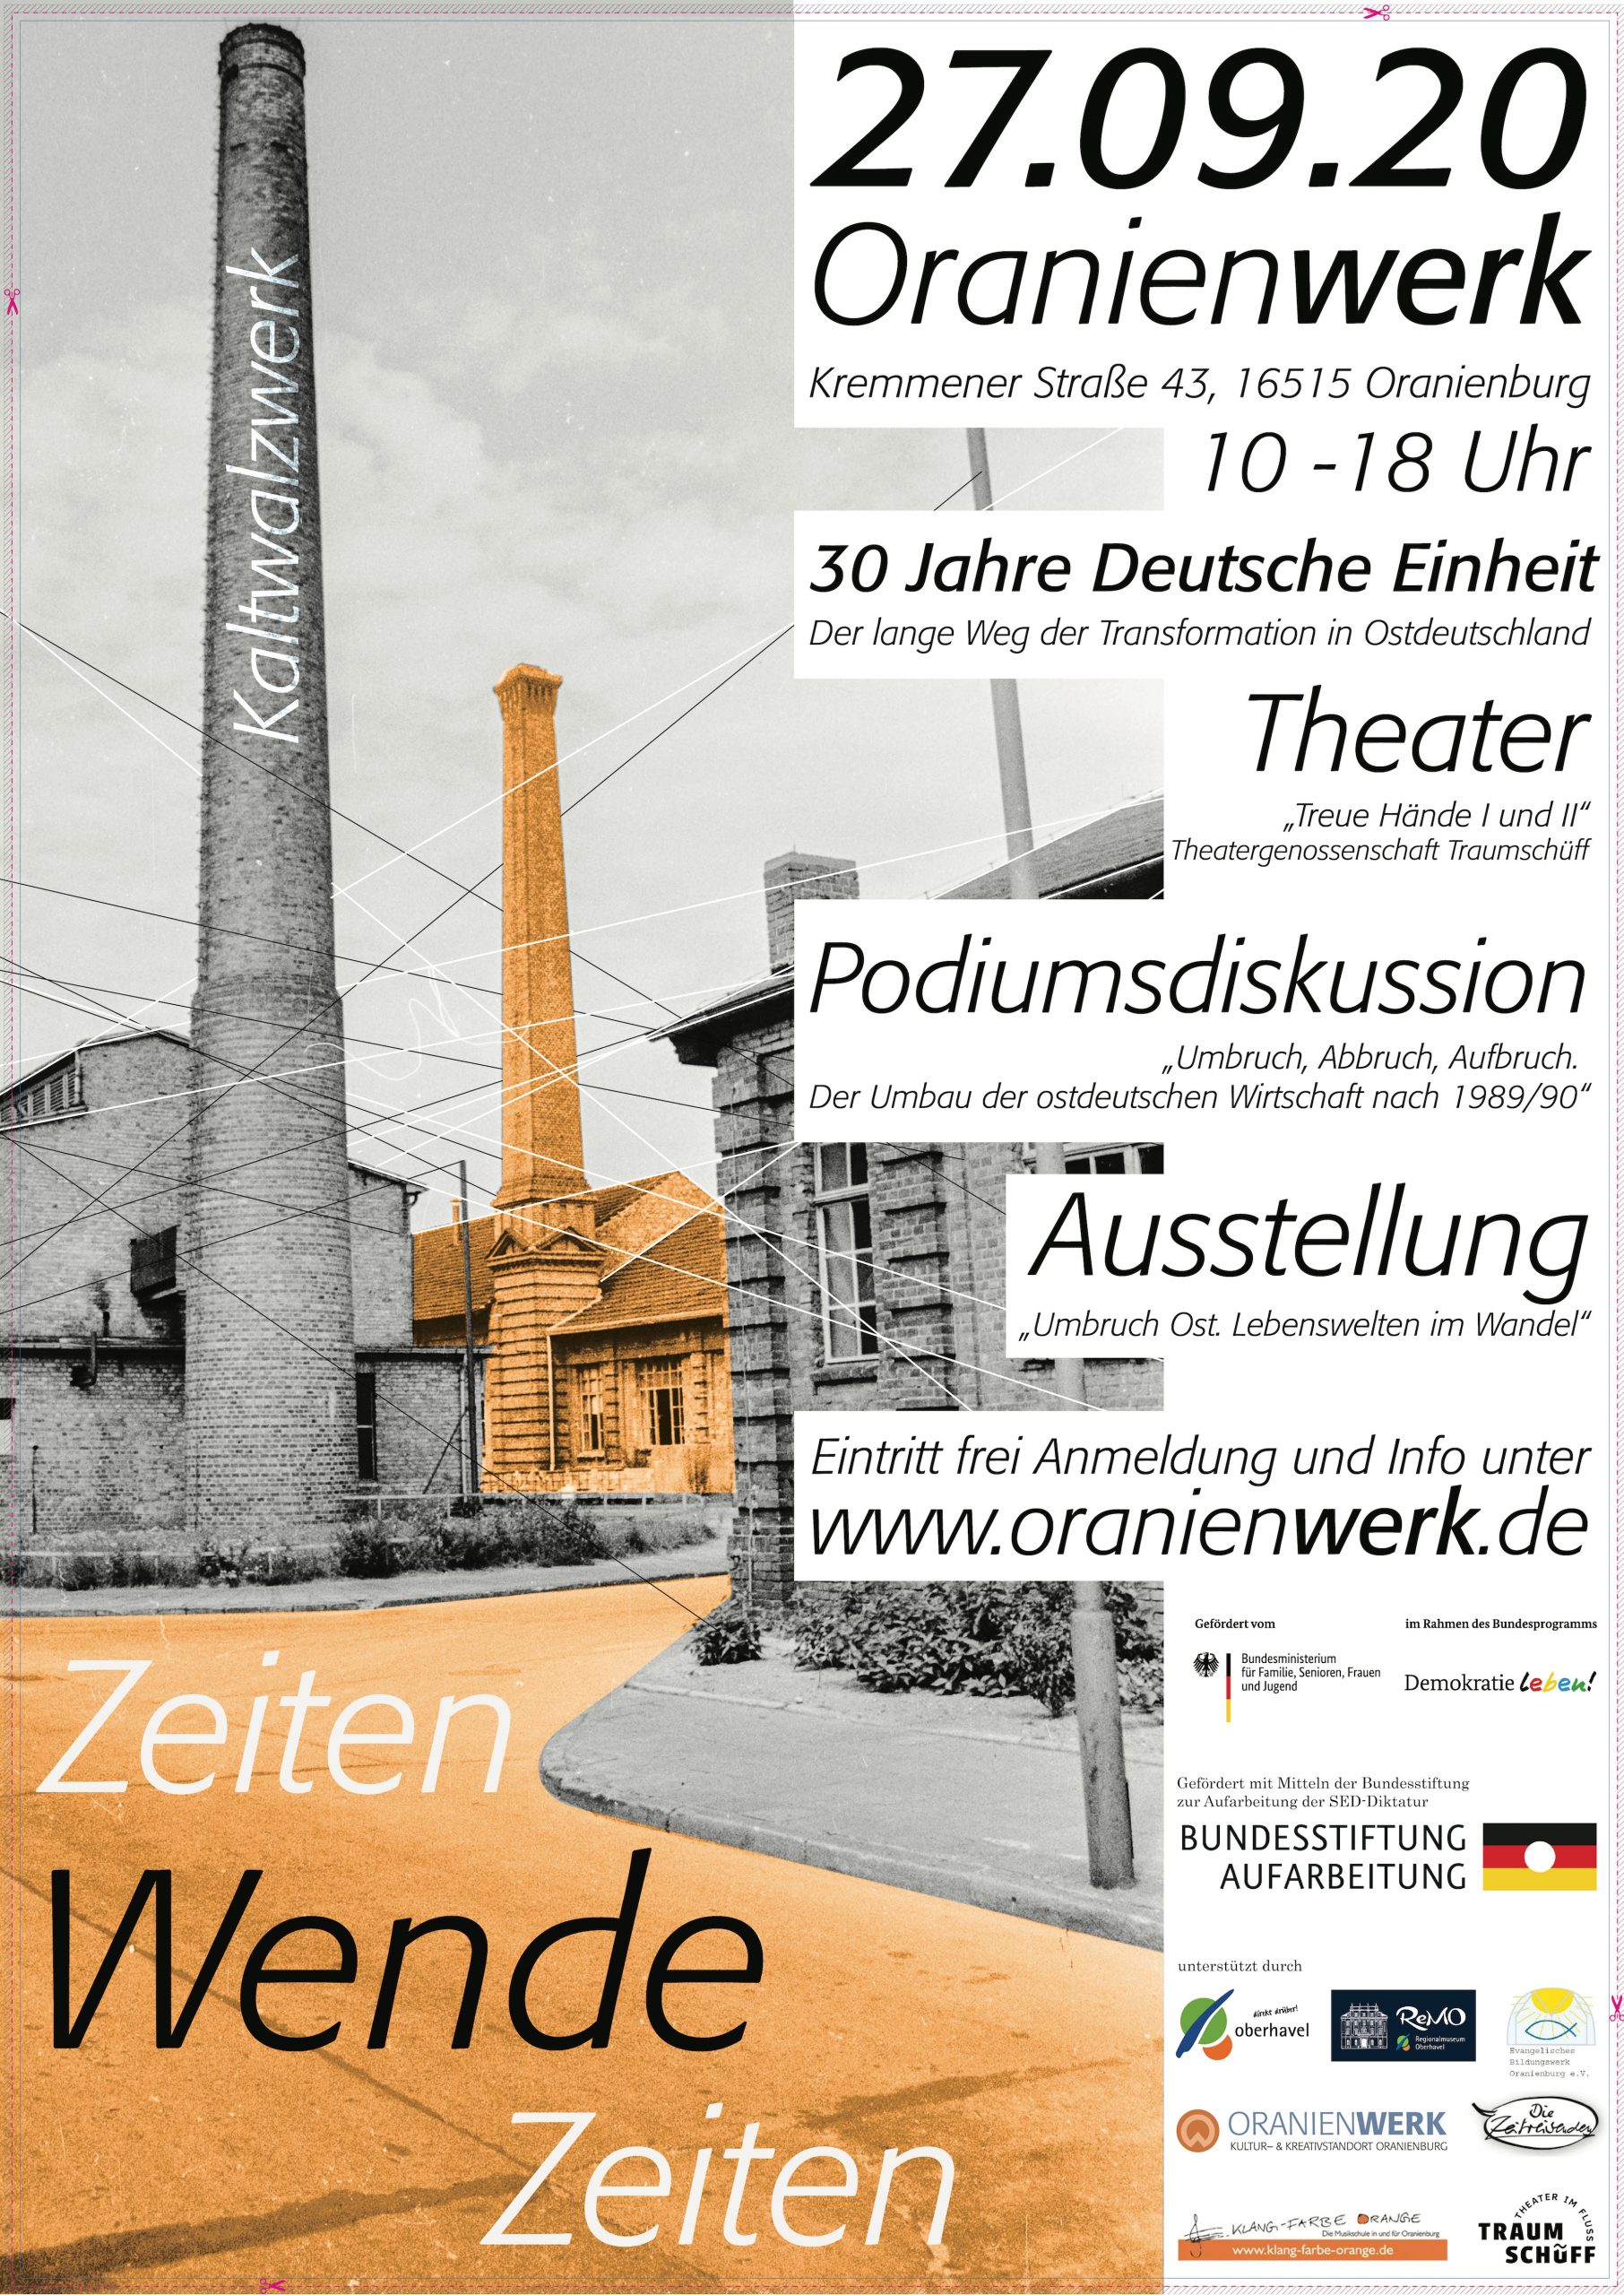 Plakat zur Veranstaltung Zeitenwende - Wendezeiten am 27. September 2020 im Oranienwerk, Oranienburg.